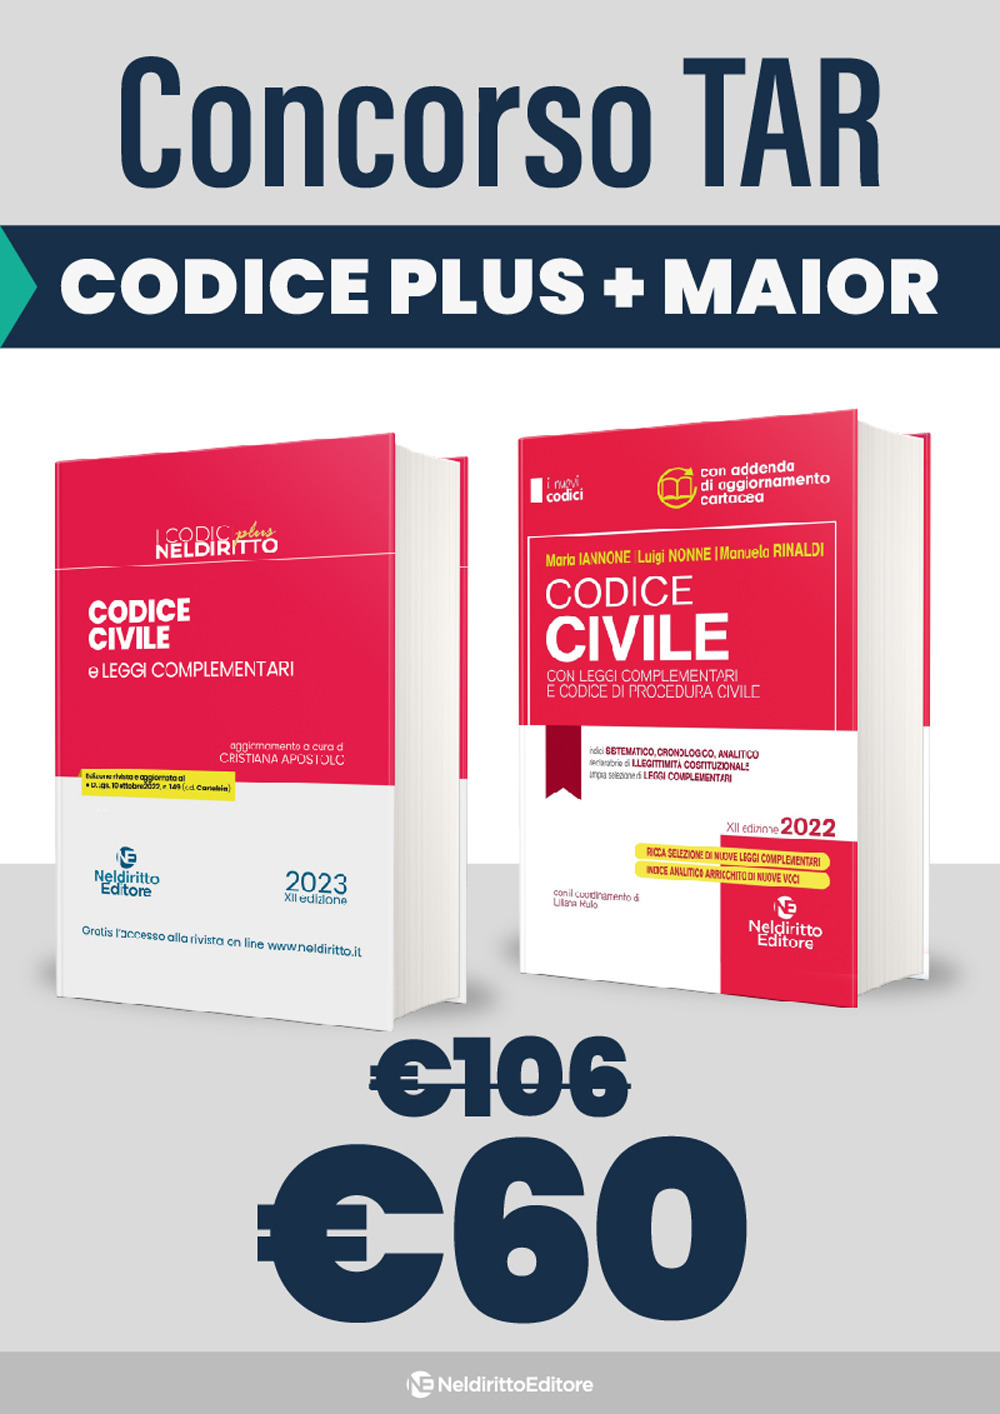 Kit TAR 2023: Codice civile plus-Codice civile con leggi complementari e codice di procedura civile